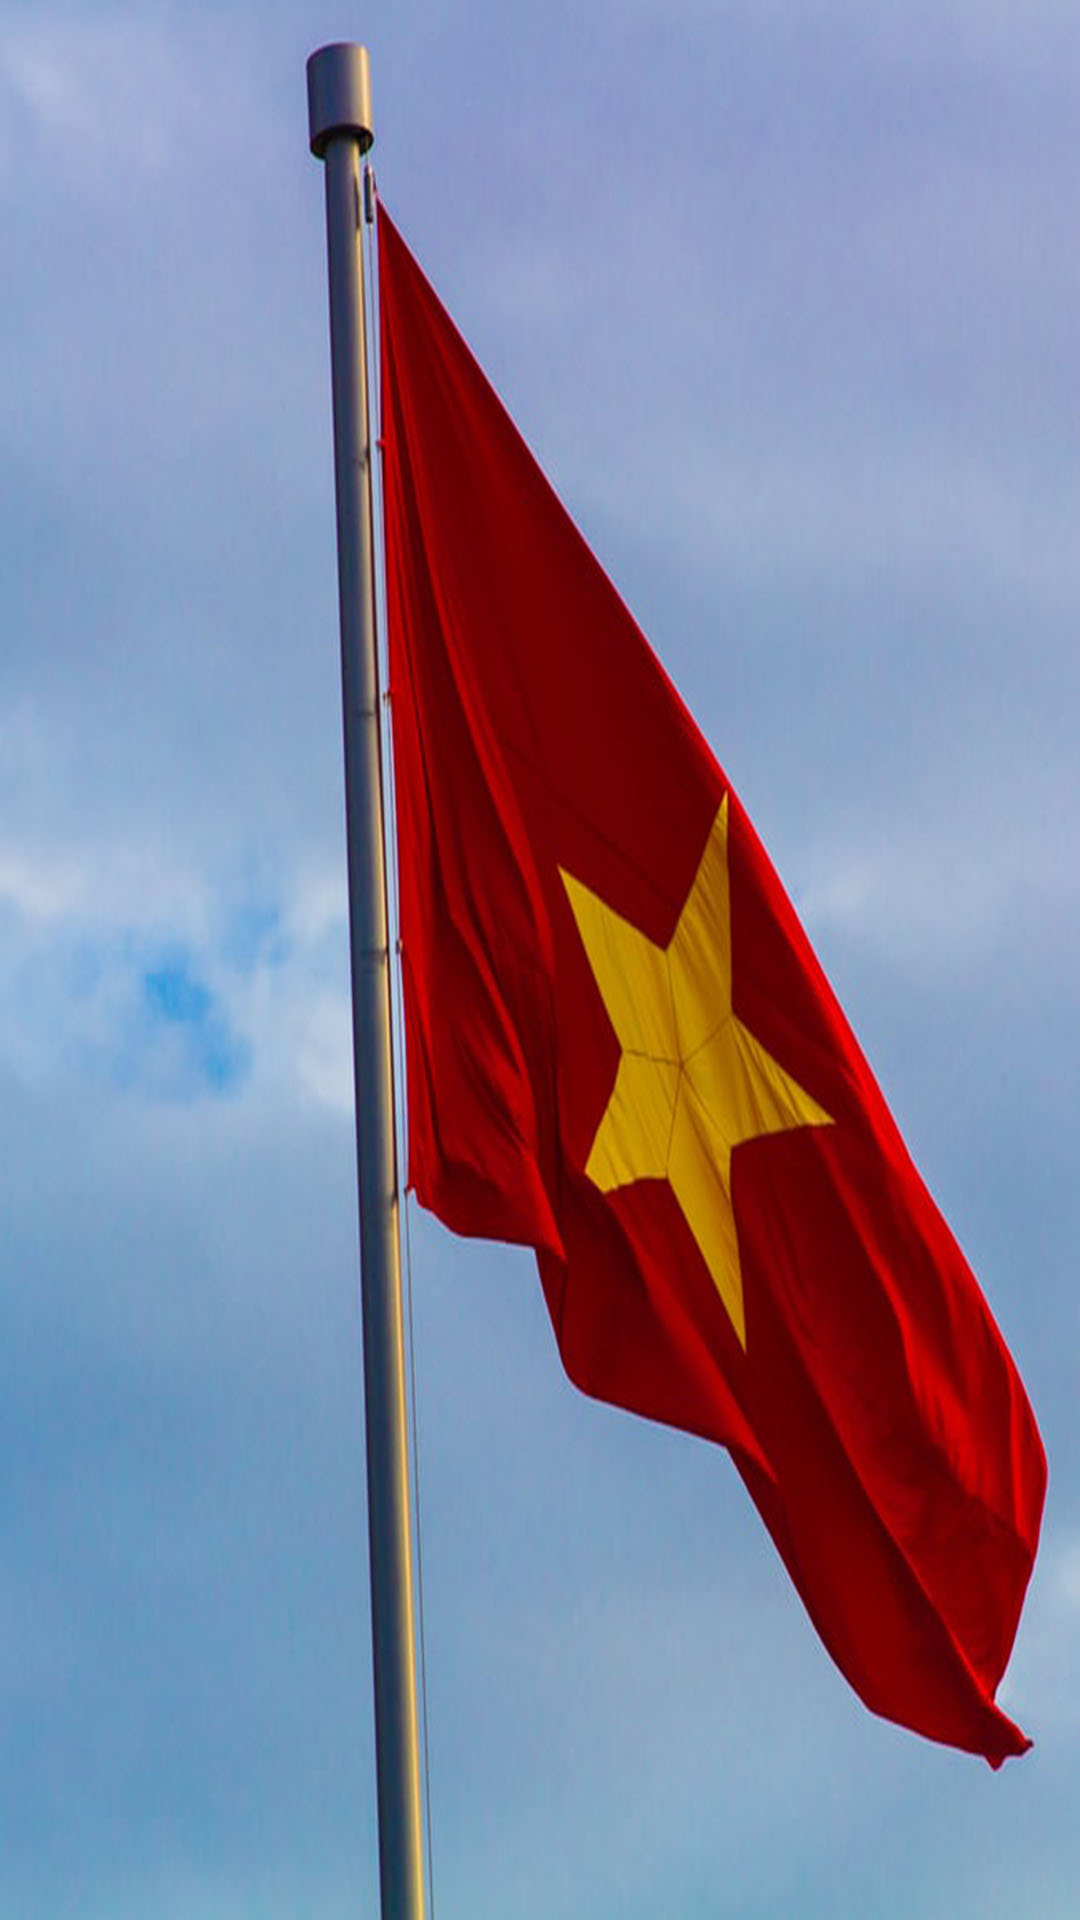 Hình nền cờ Việt Nam: Hình nền cờ Việt Nam là một trong những hình ảnh rất phổ biến trên các thiết bị điện tử, được sử dụng rộng rãi trong các tác phẩm nghệ thuật. Với những bức ảnh về hình nền cờ Việt Nam, chúng ta có thể cảm nhận được sự tự hào và niềm tin vào tương lai của đất nước và dân tộc Việt Nam.